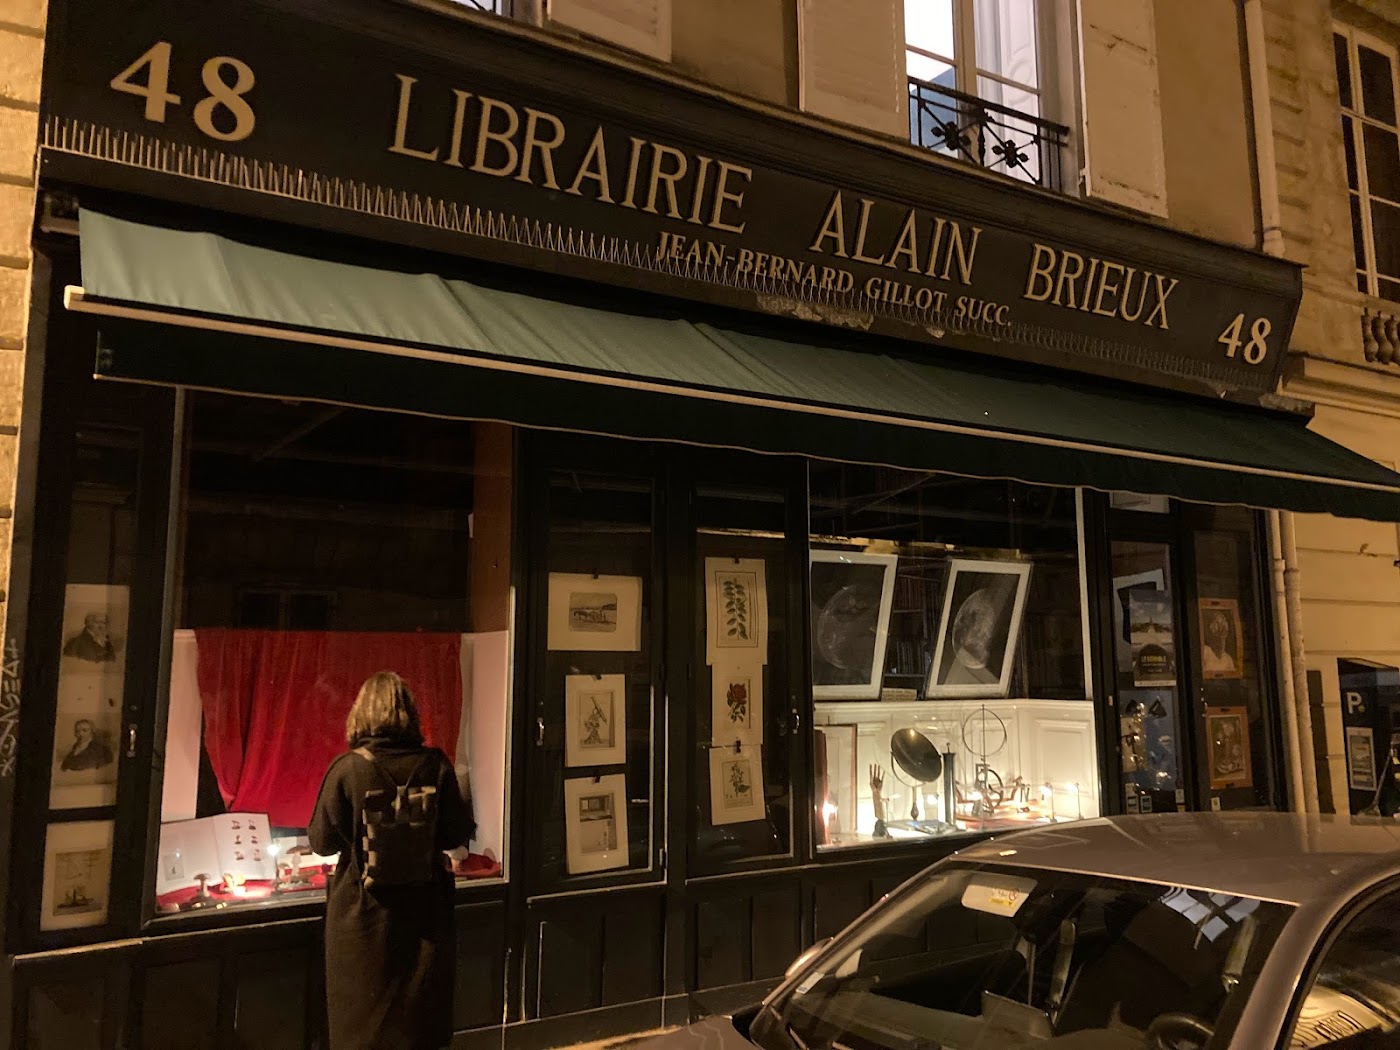 Librairie Alain Brieux